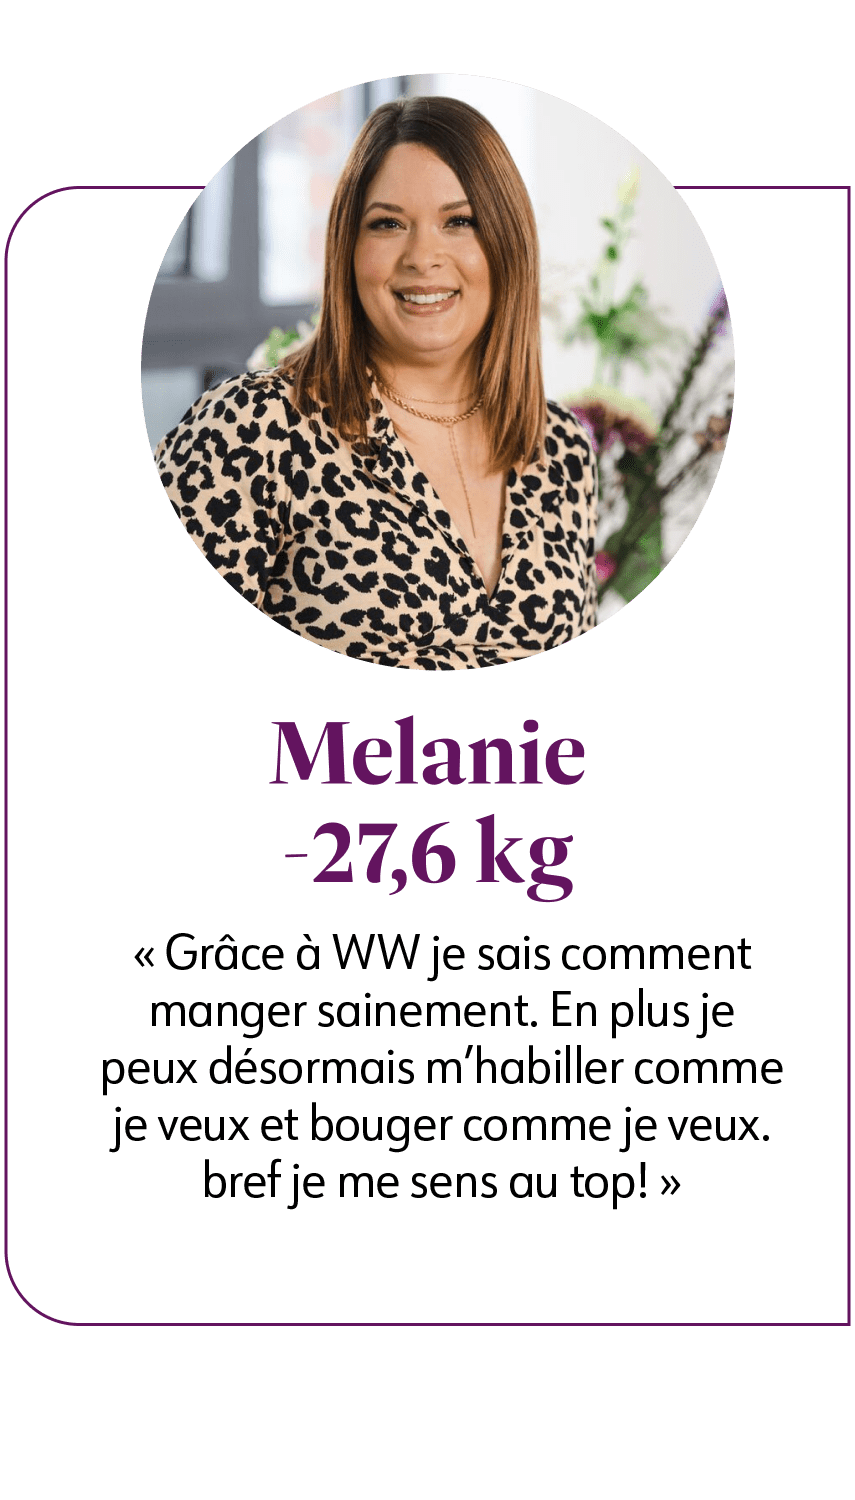 Mélanie a perdu 27.6 kg avec WeightWatchers. Elle témoigne: "Grâce à WW je sais comment manger sainement et je me sens au top!"